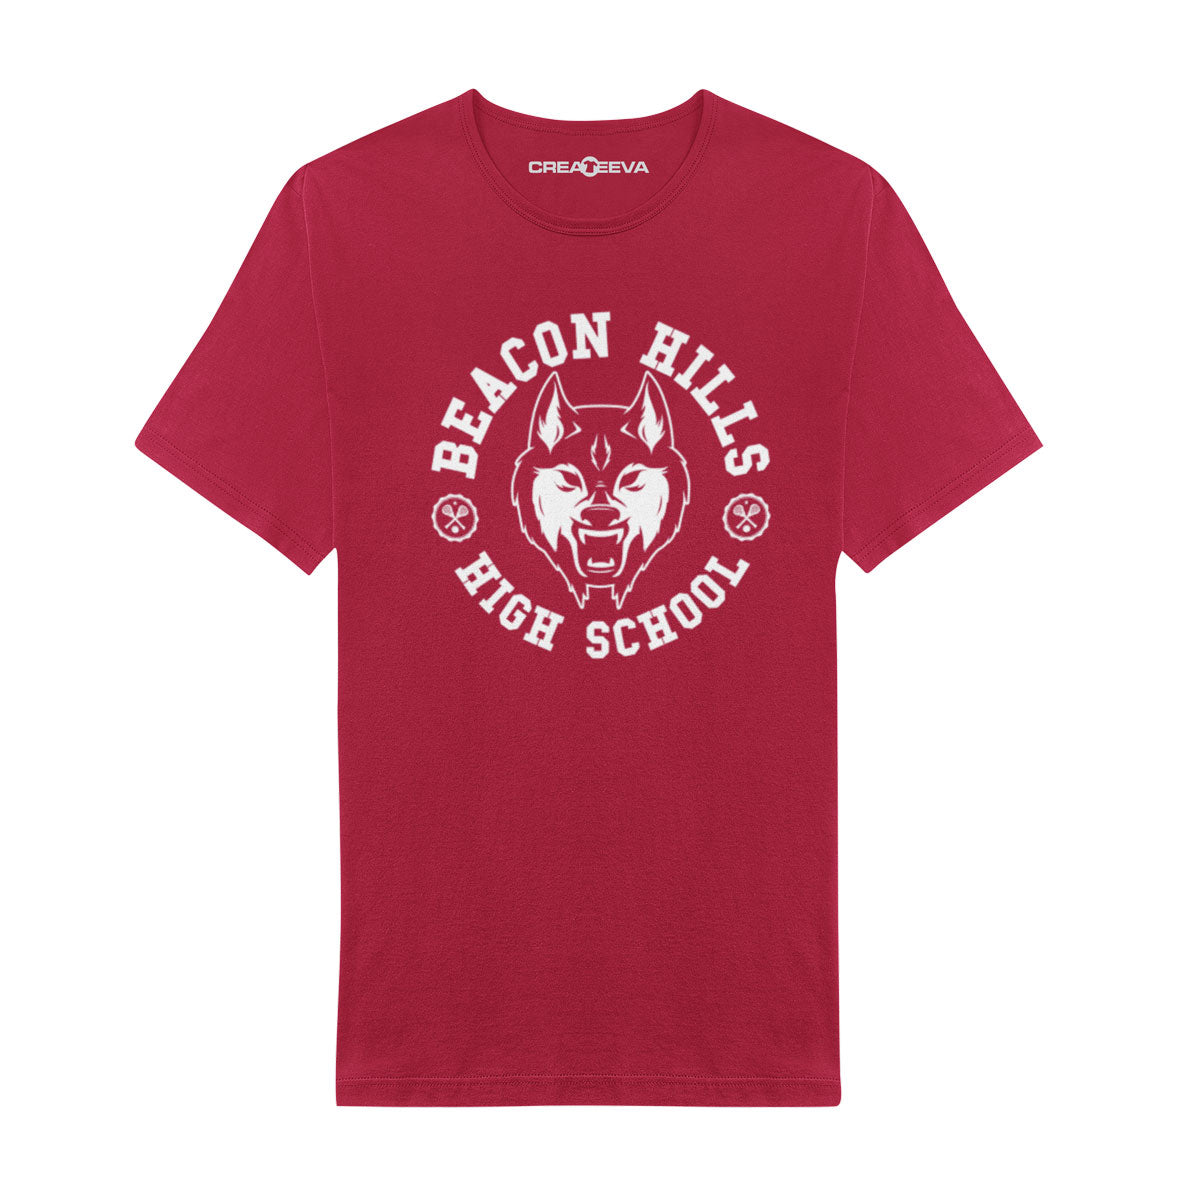 T-shirt High School Beacon Hills Maglia Wolf Stilinski Lahey McCall - uomo